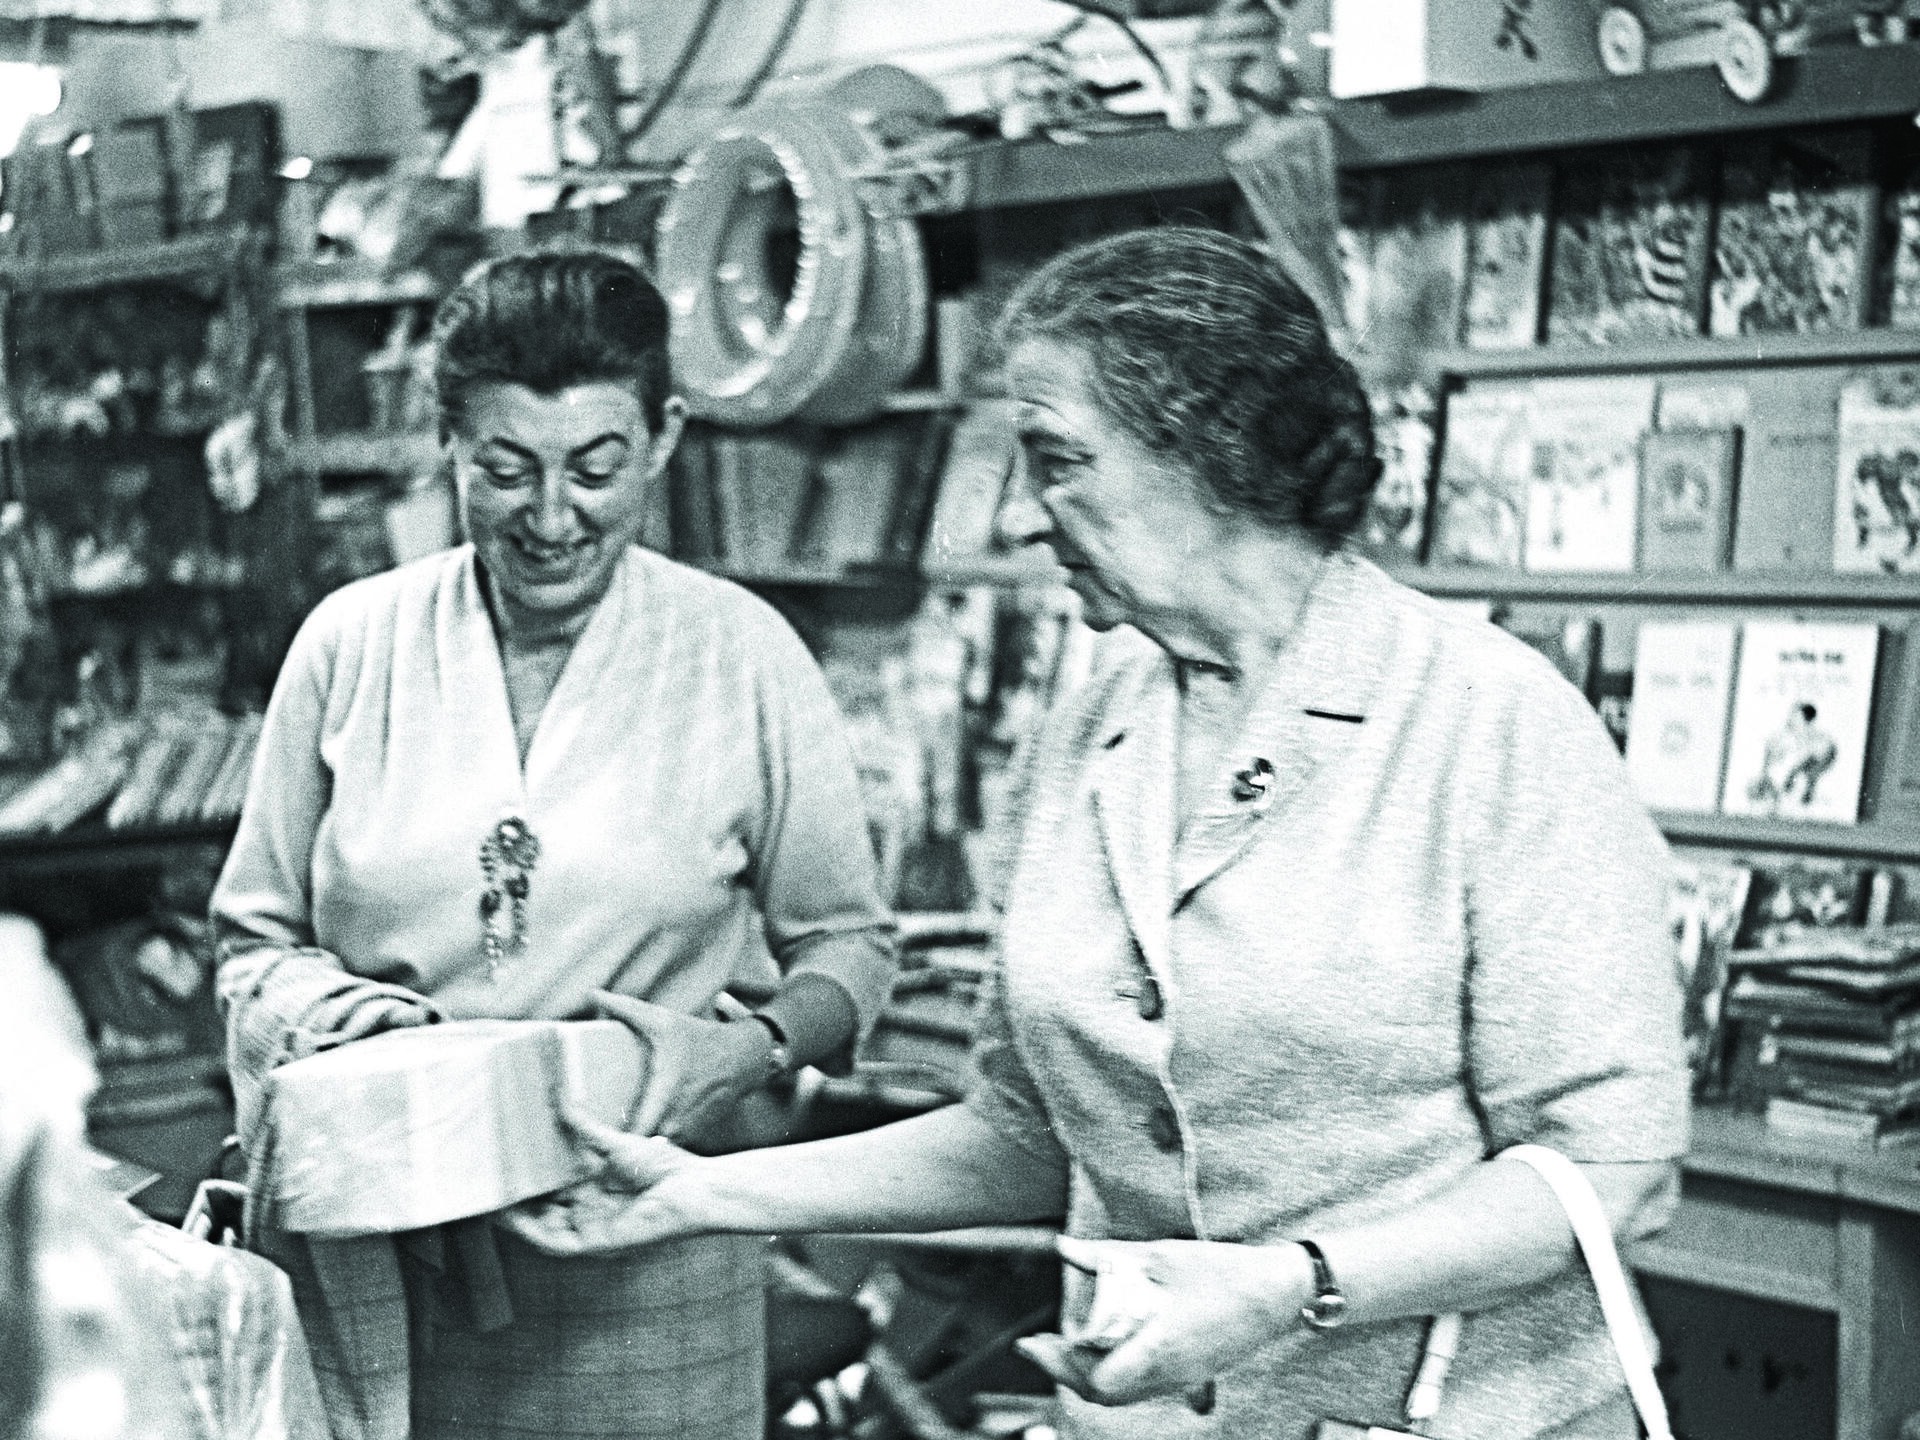 גולדה מאיר (מימין) ולו קדר בחנות צעצועים